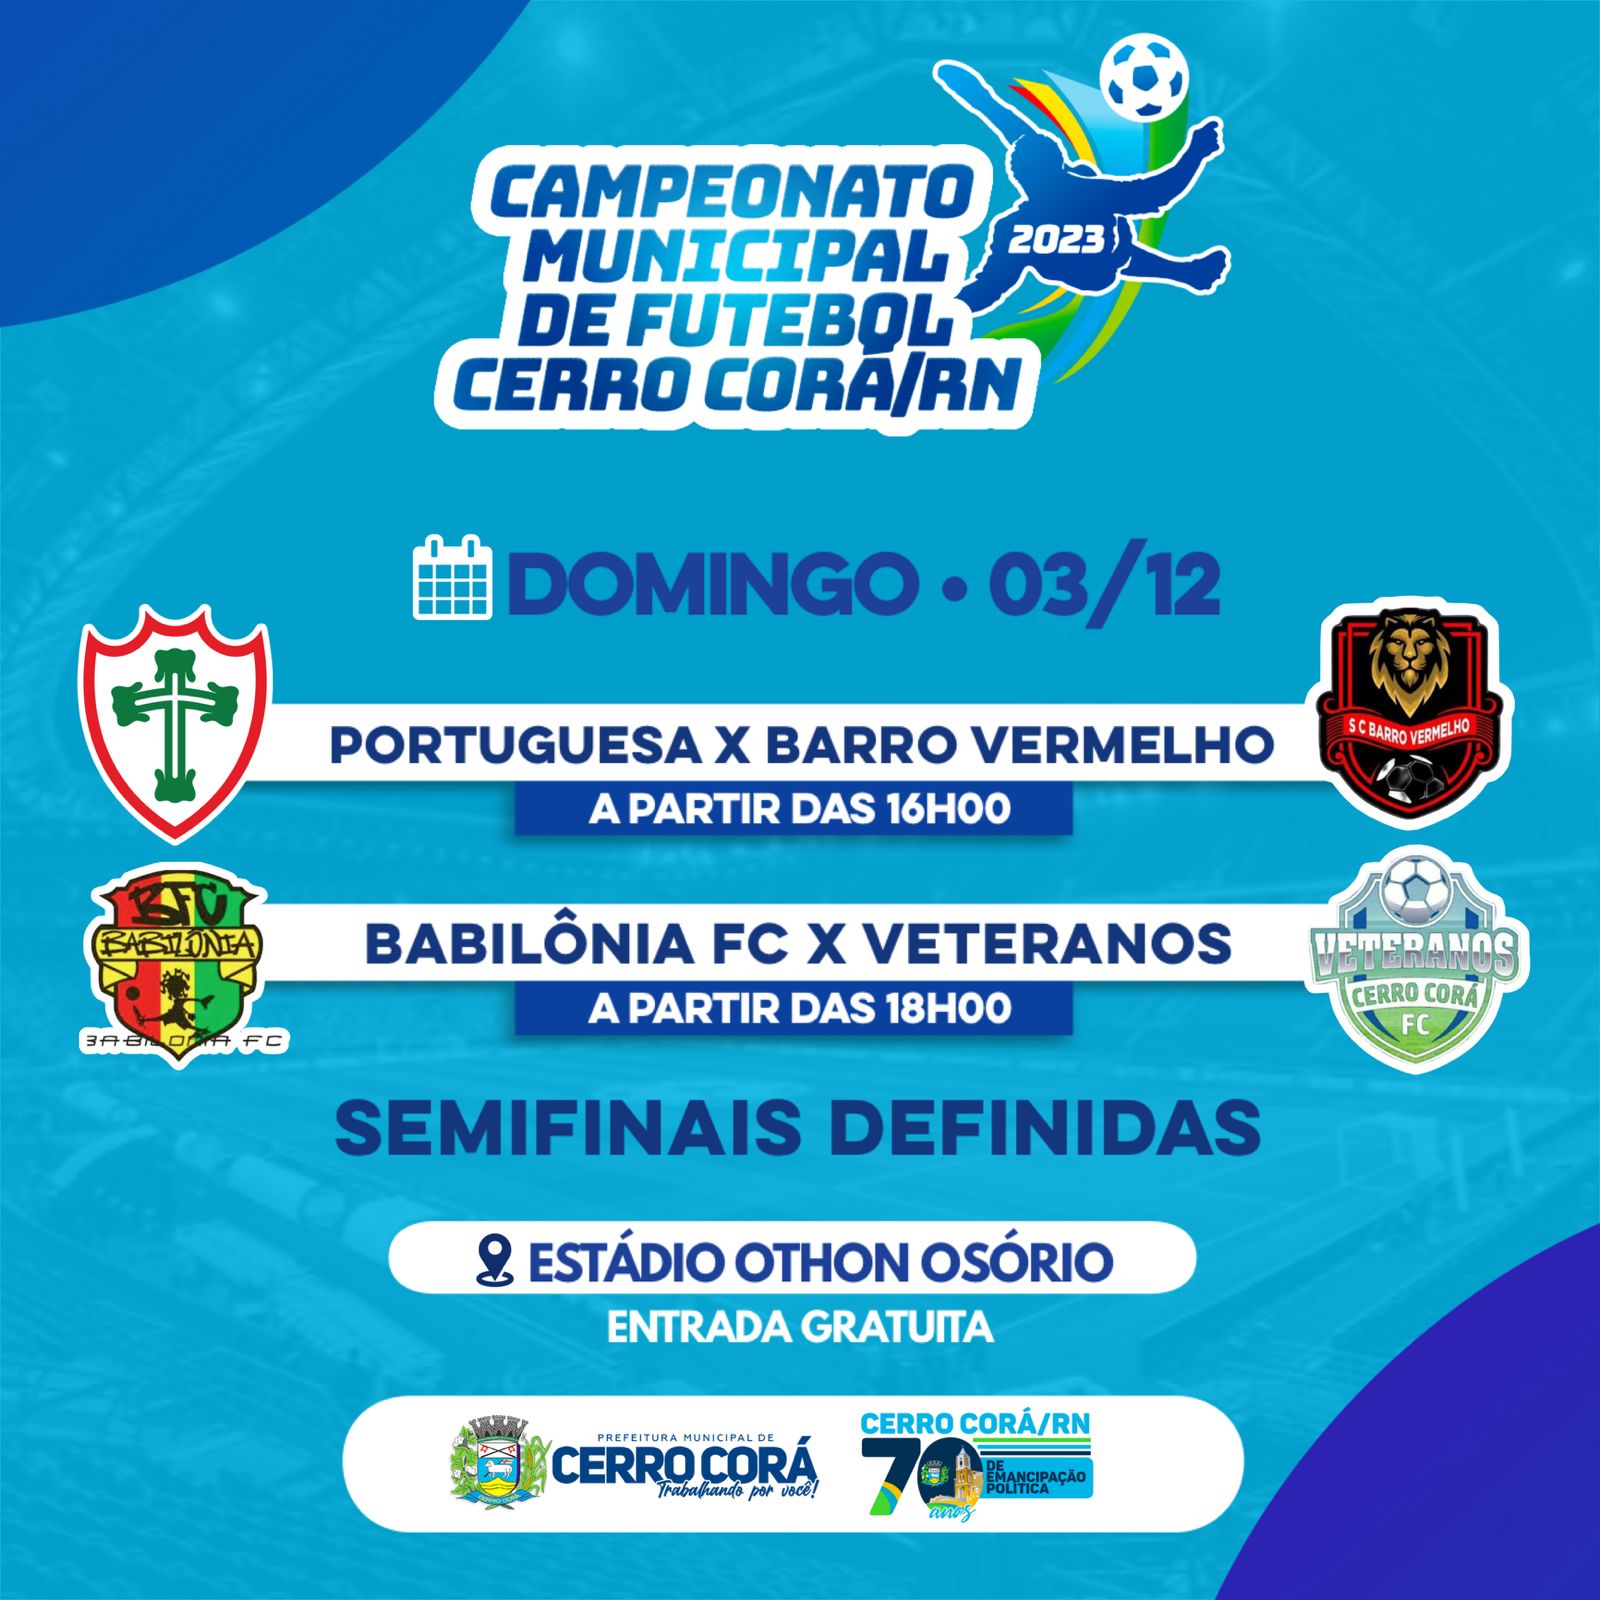 Cerro Corá: Campeonato de futebol semifinais definidas para domingo(03), confira aqui: